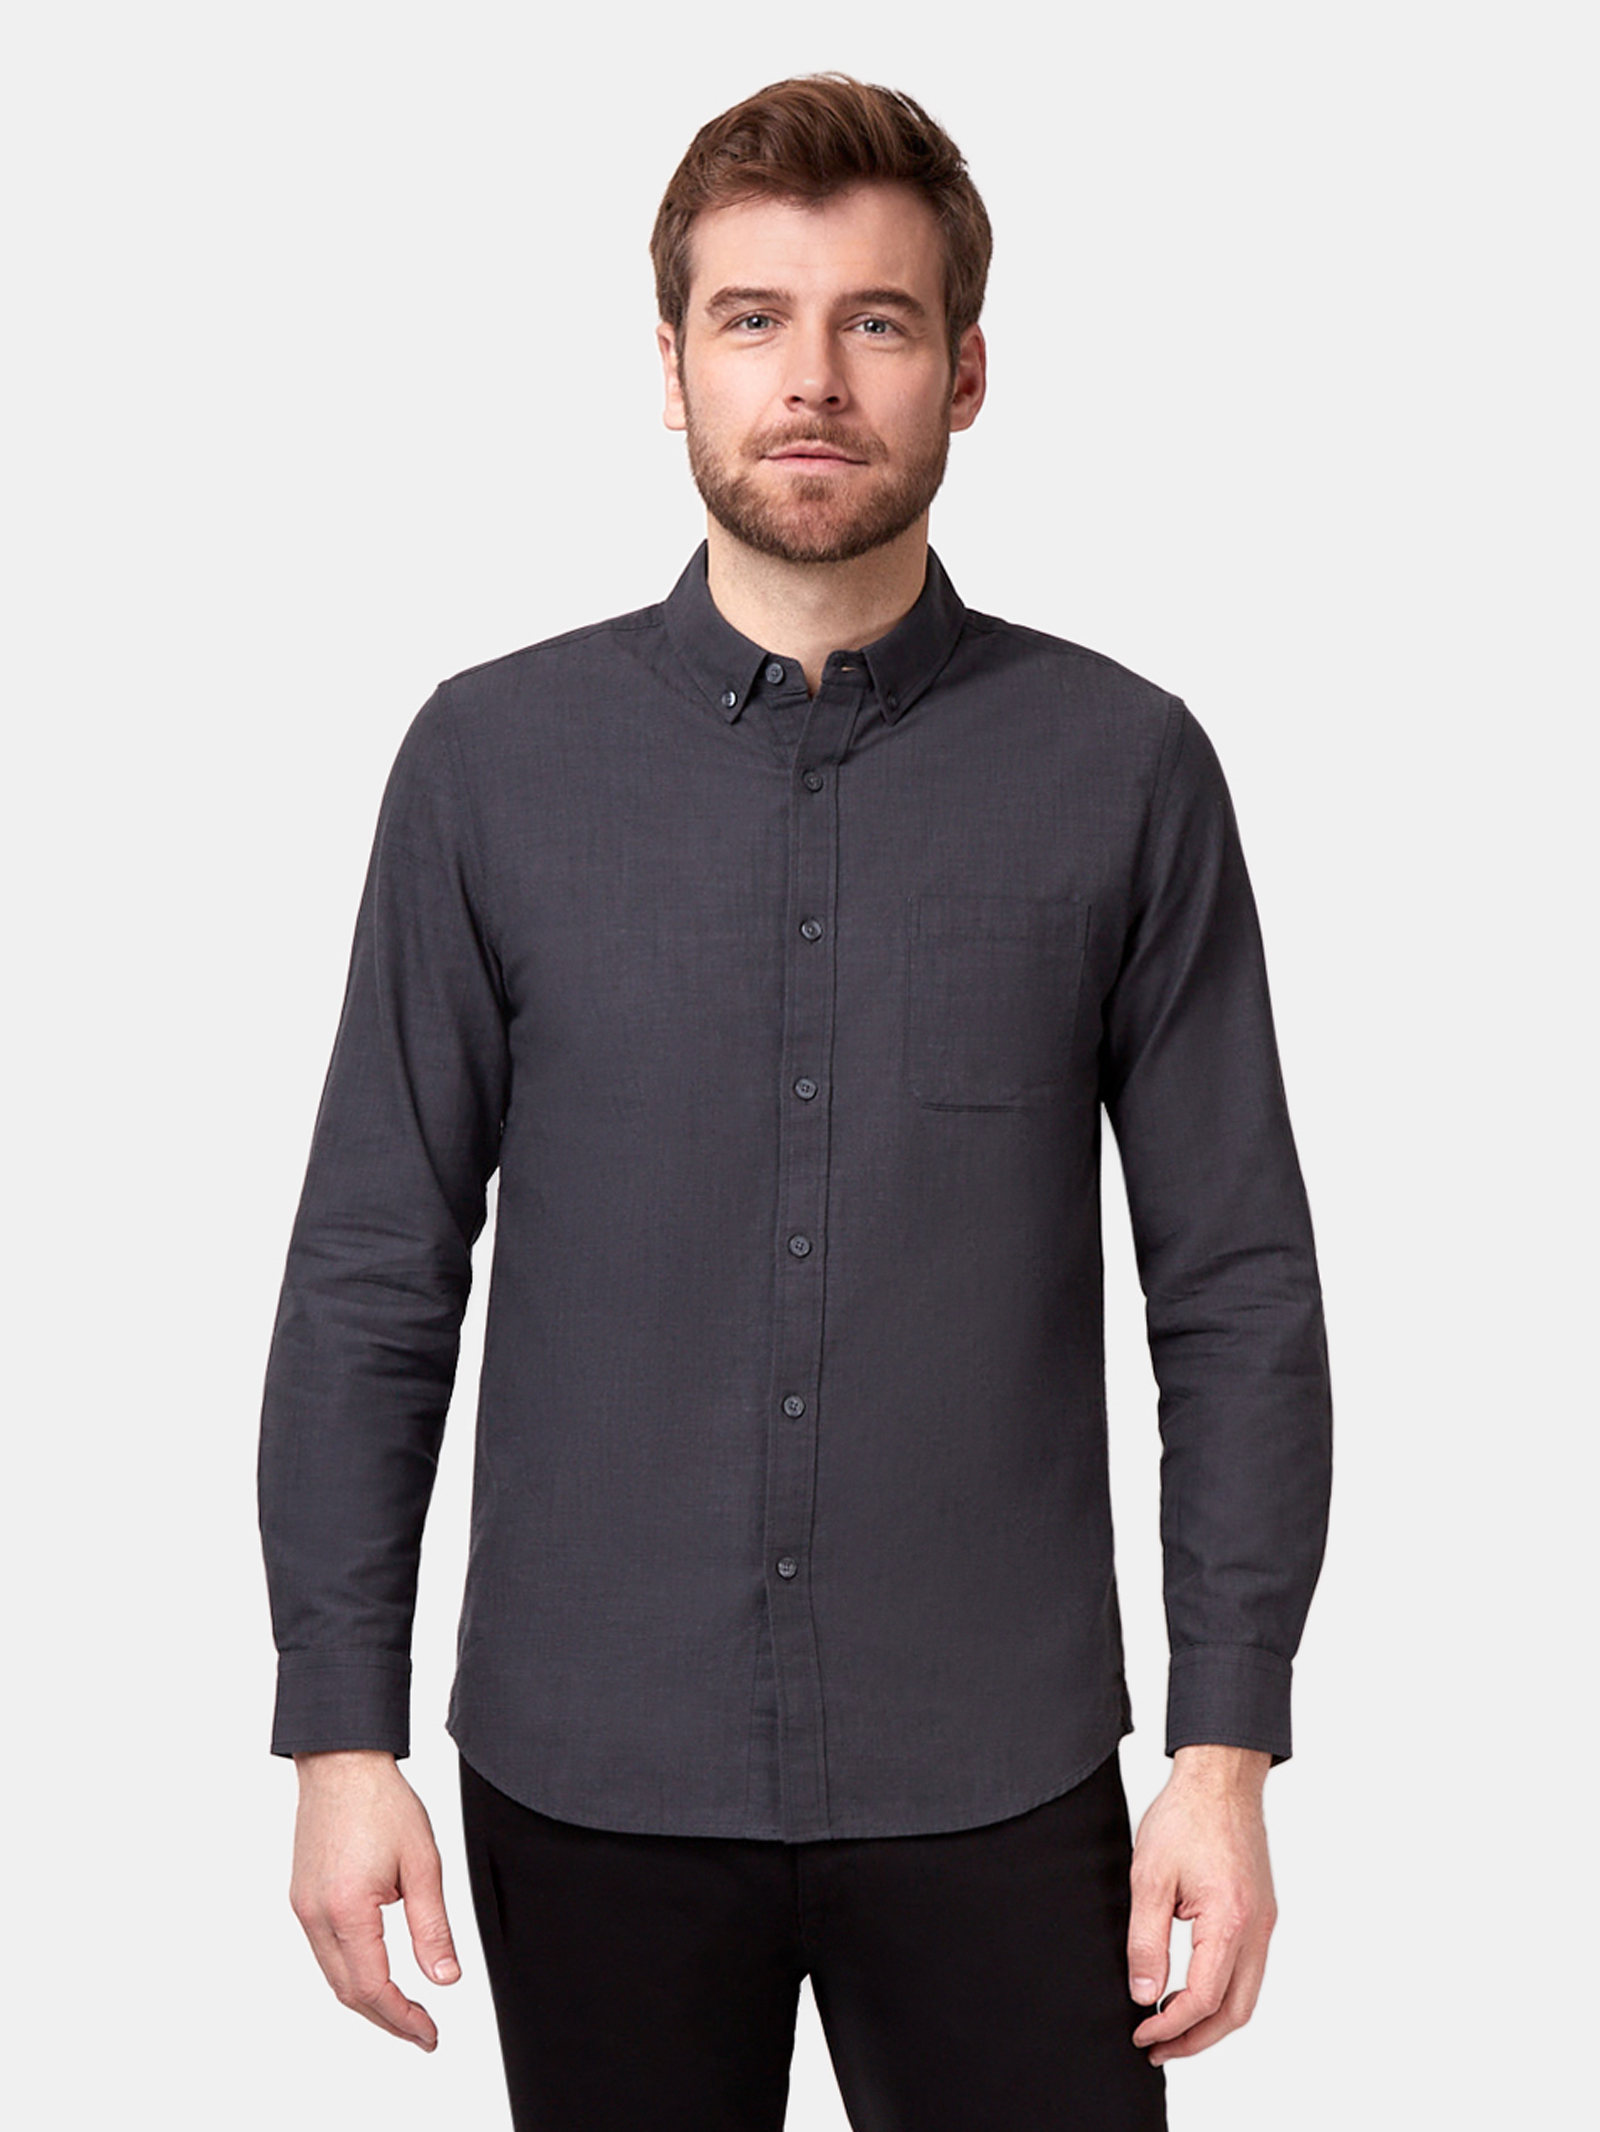 Bennett Long Sleeve Textured Shirt | Jeanswest